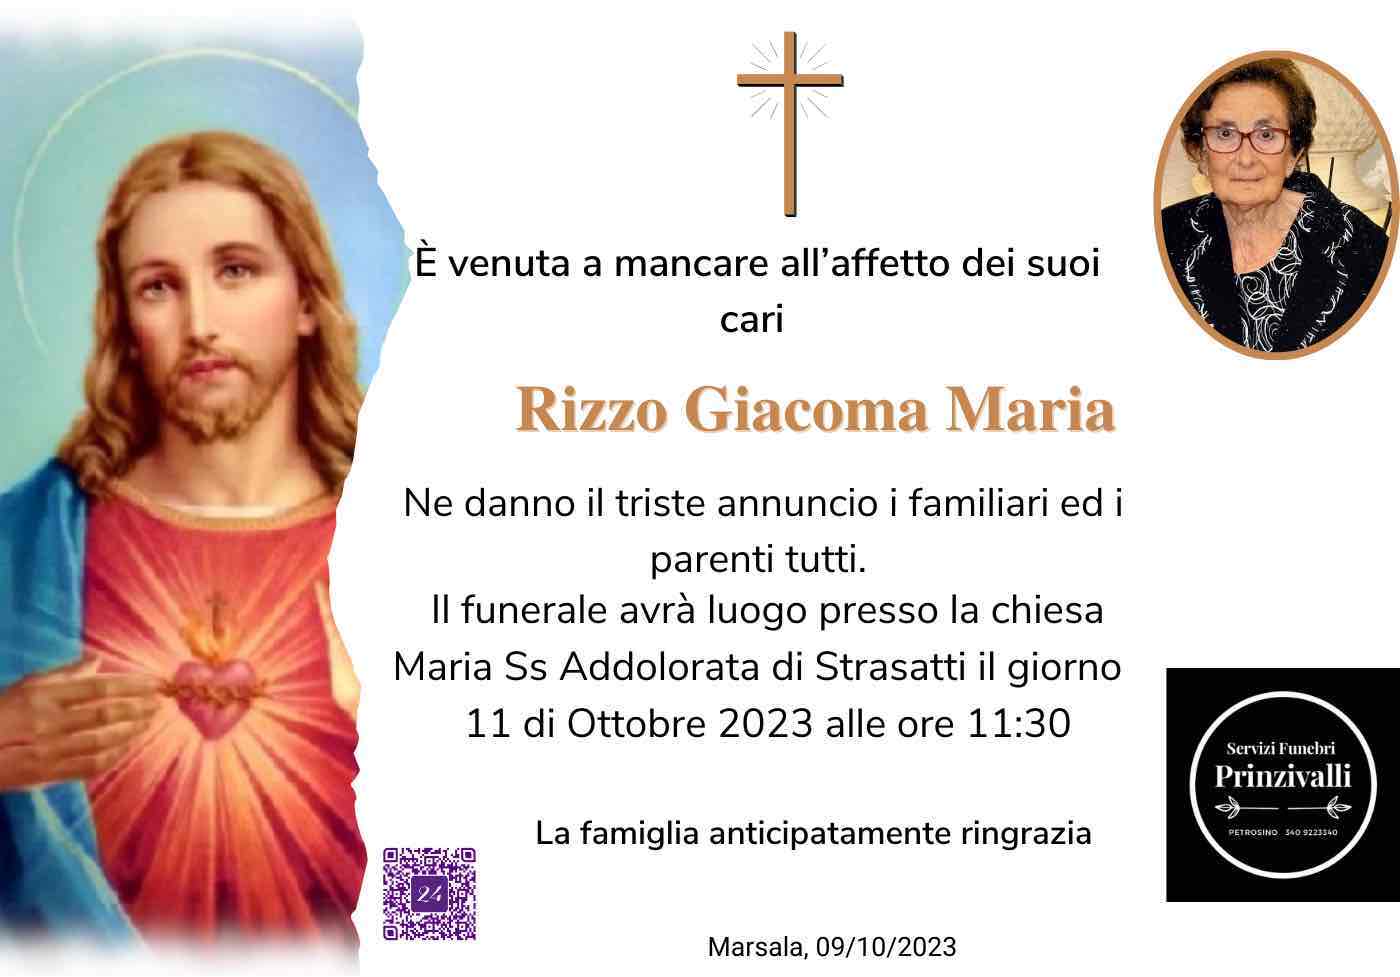 Giacoma Maria Rizzo